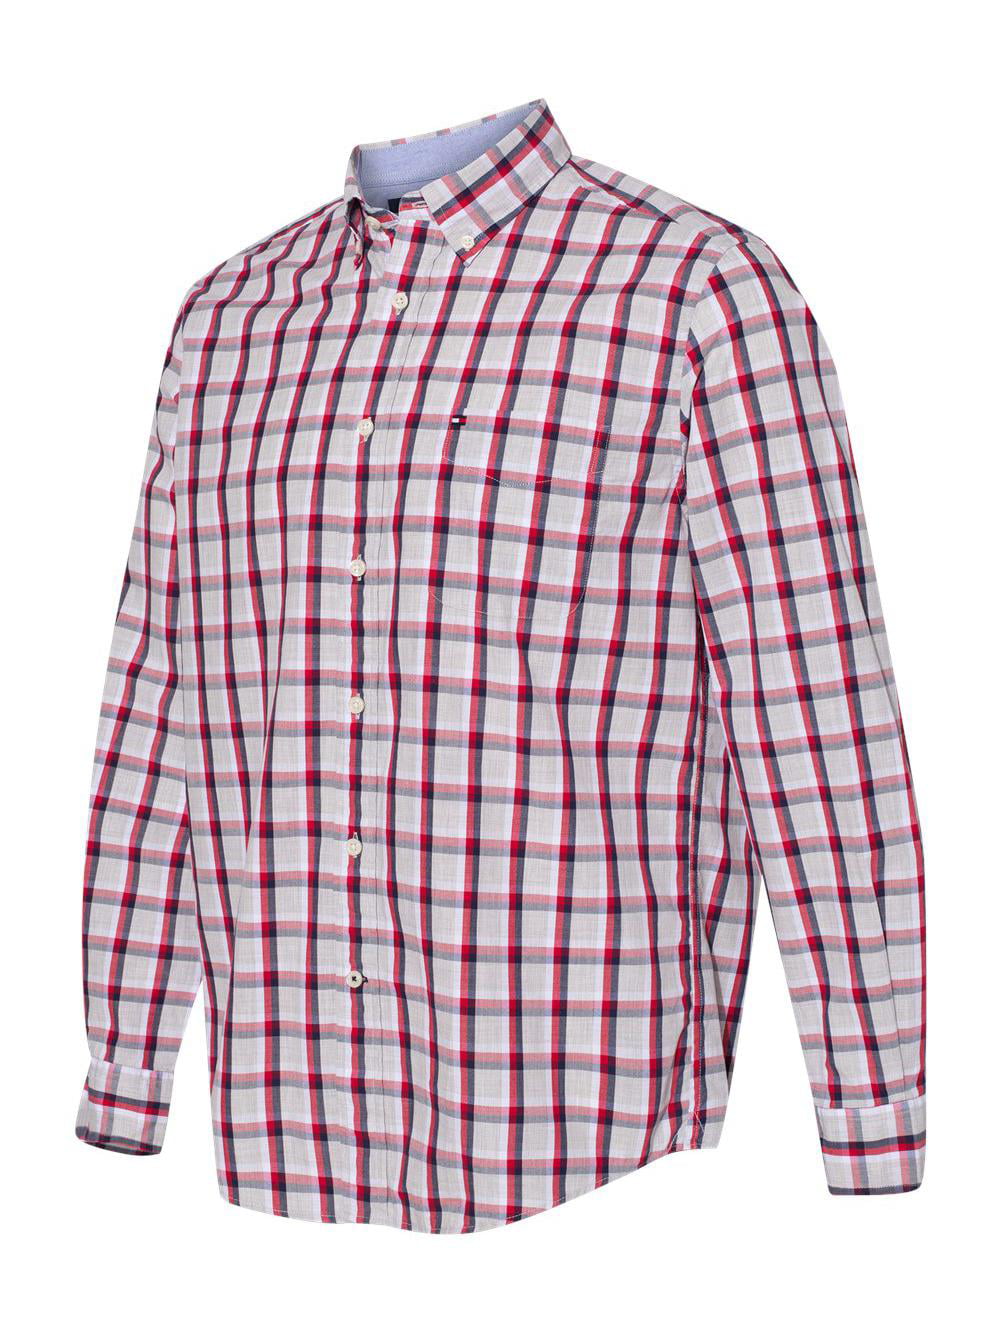 Tommy Hilfiger Men's The Flex Plaid Button-Down Shirts 